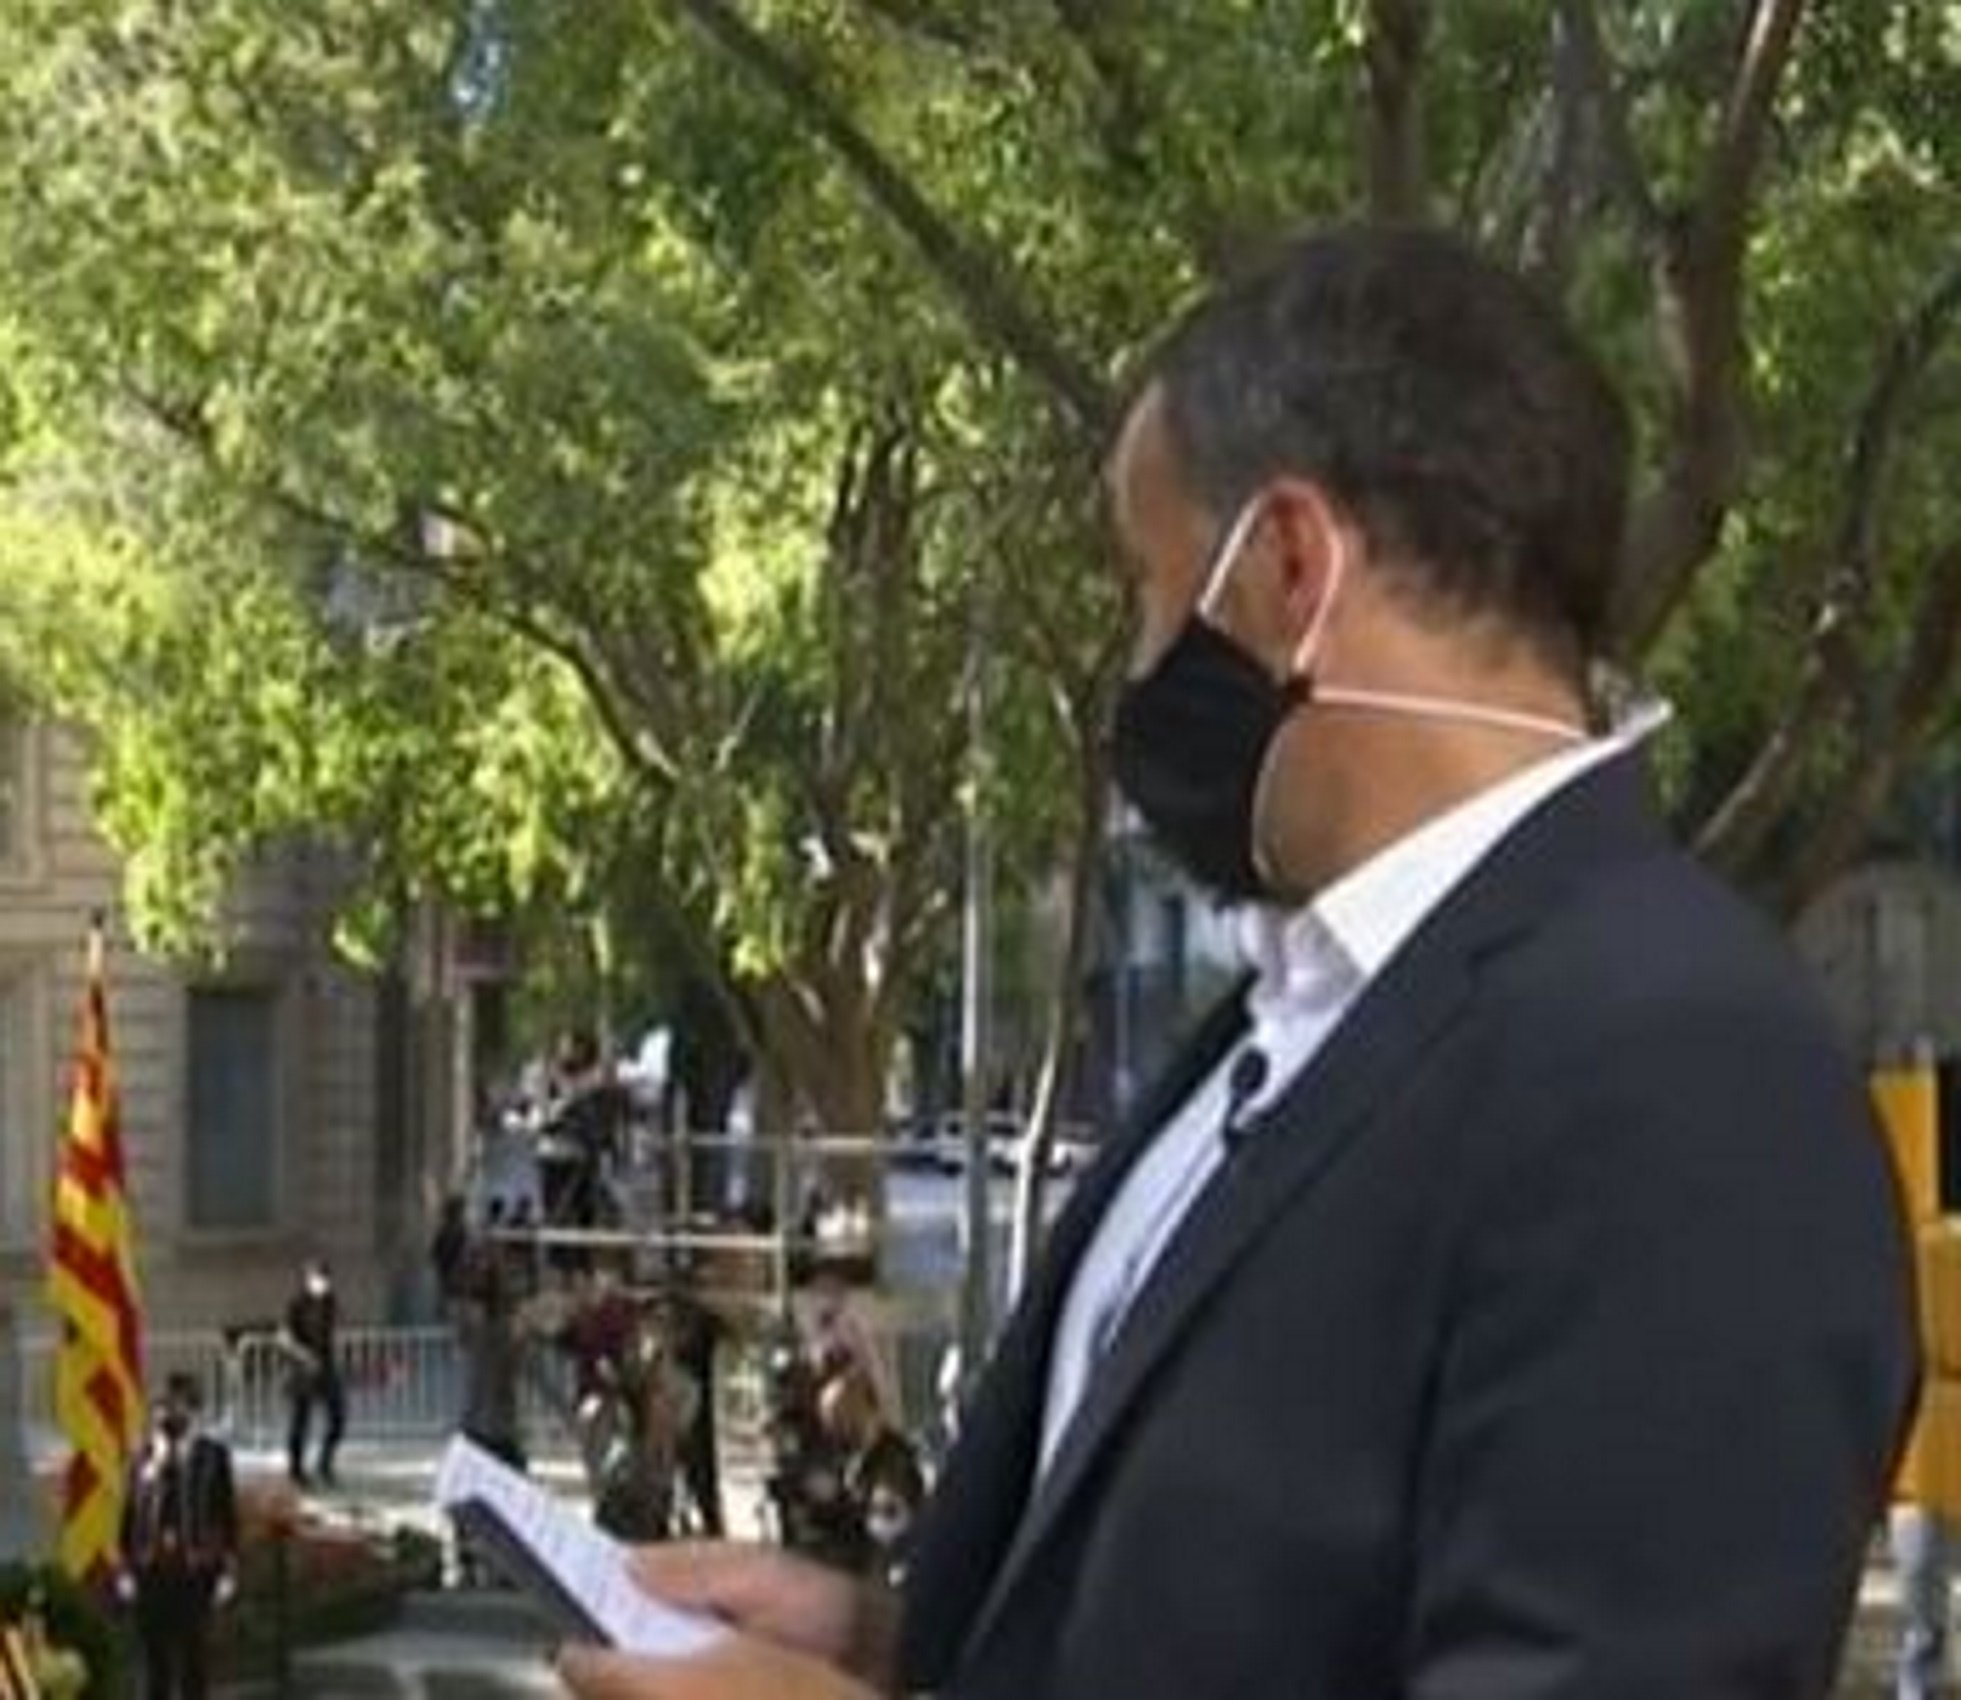 Famoso expresentador de TV3 estalla por lo que han dicho en TV3 sobre un desprecio al catalán